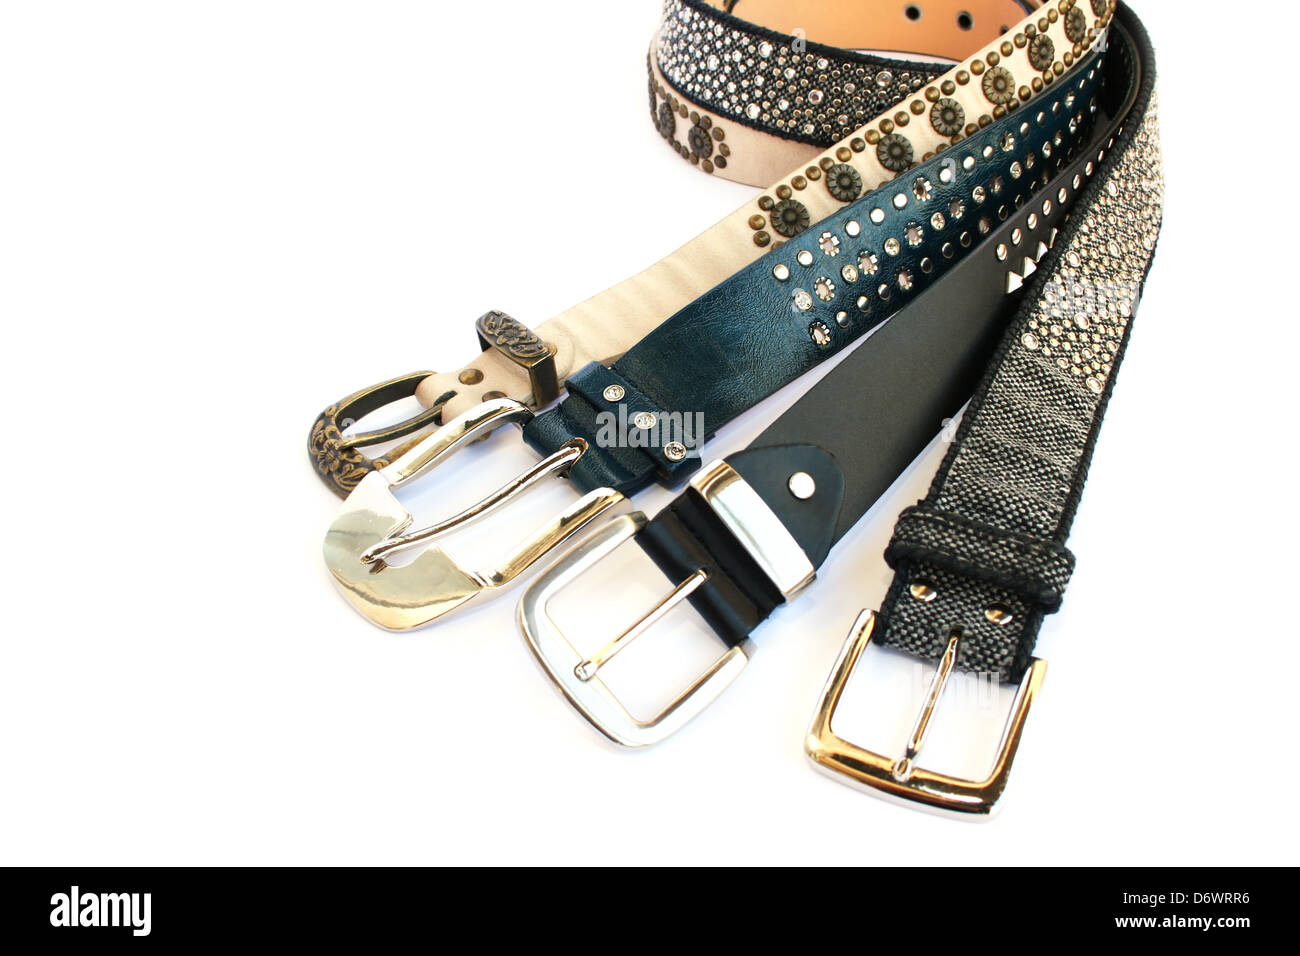 Fashionable belts isolated on white background. Stock Photo